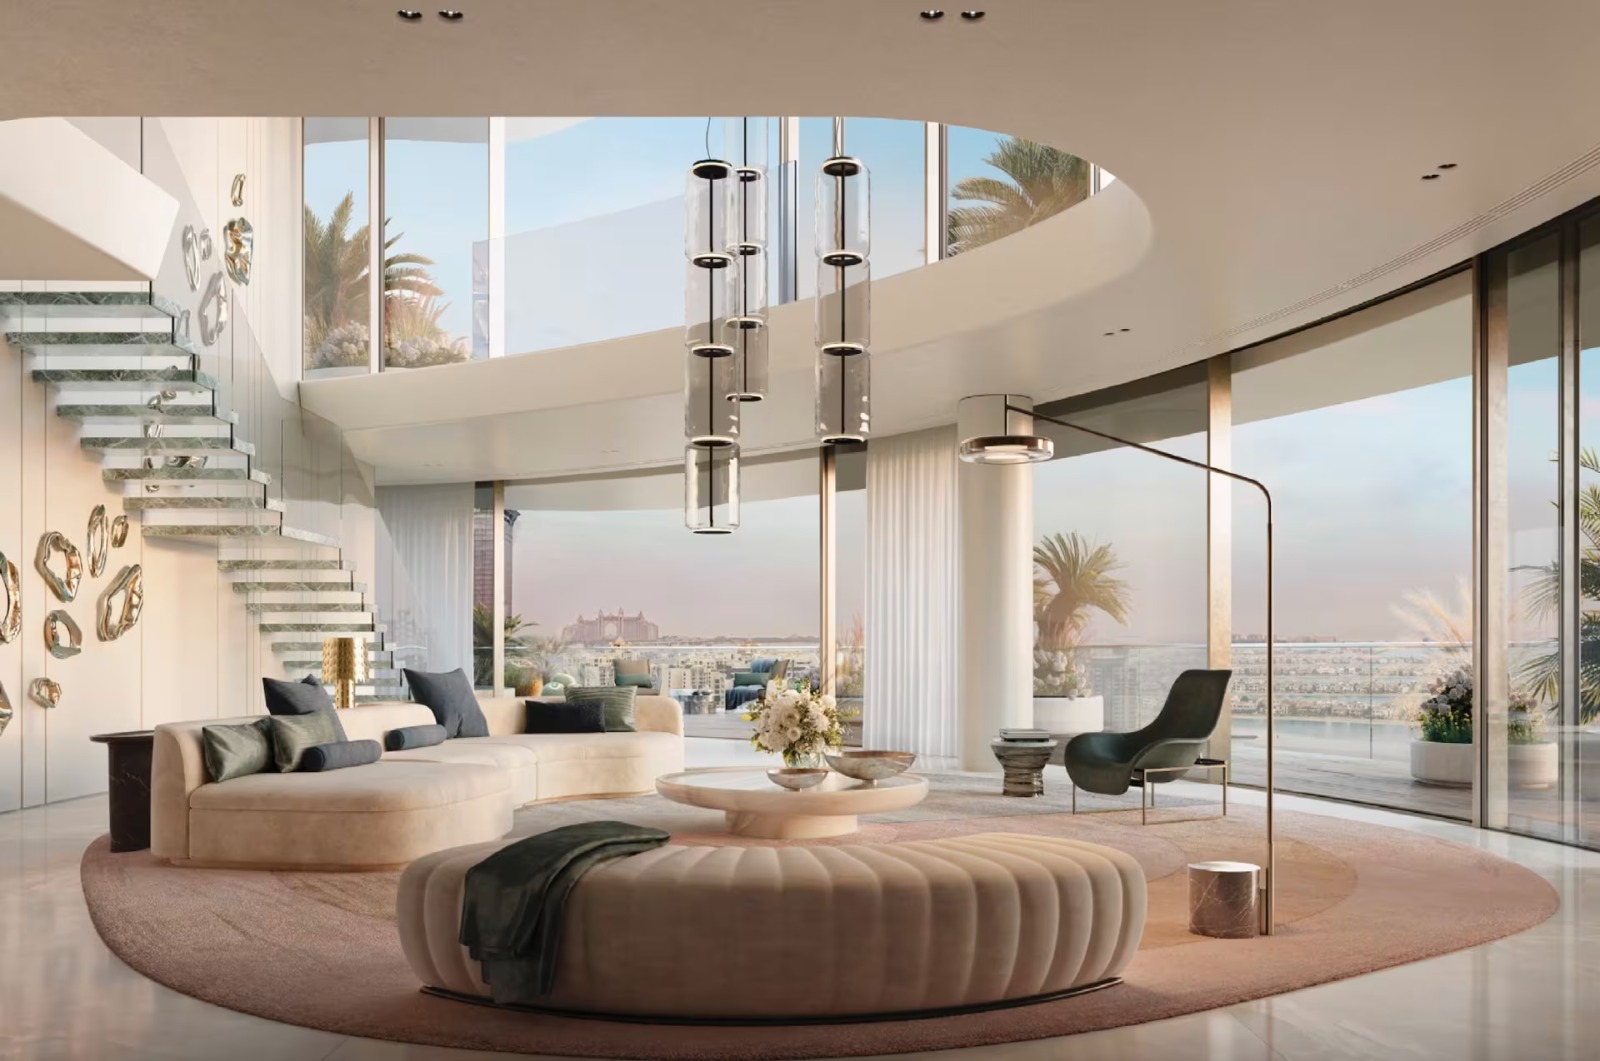 شراء شقة في دبي بمبلغ "خيالي" قبل تشييدها (صور)